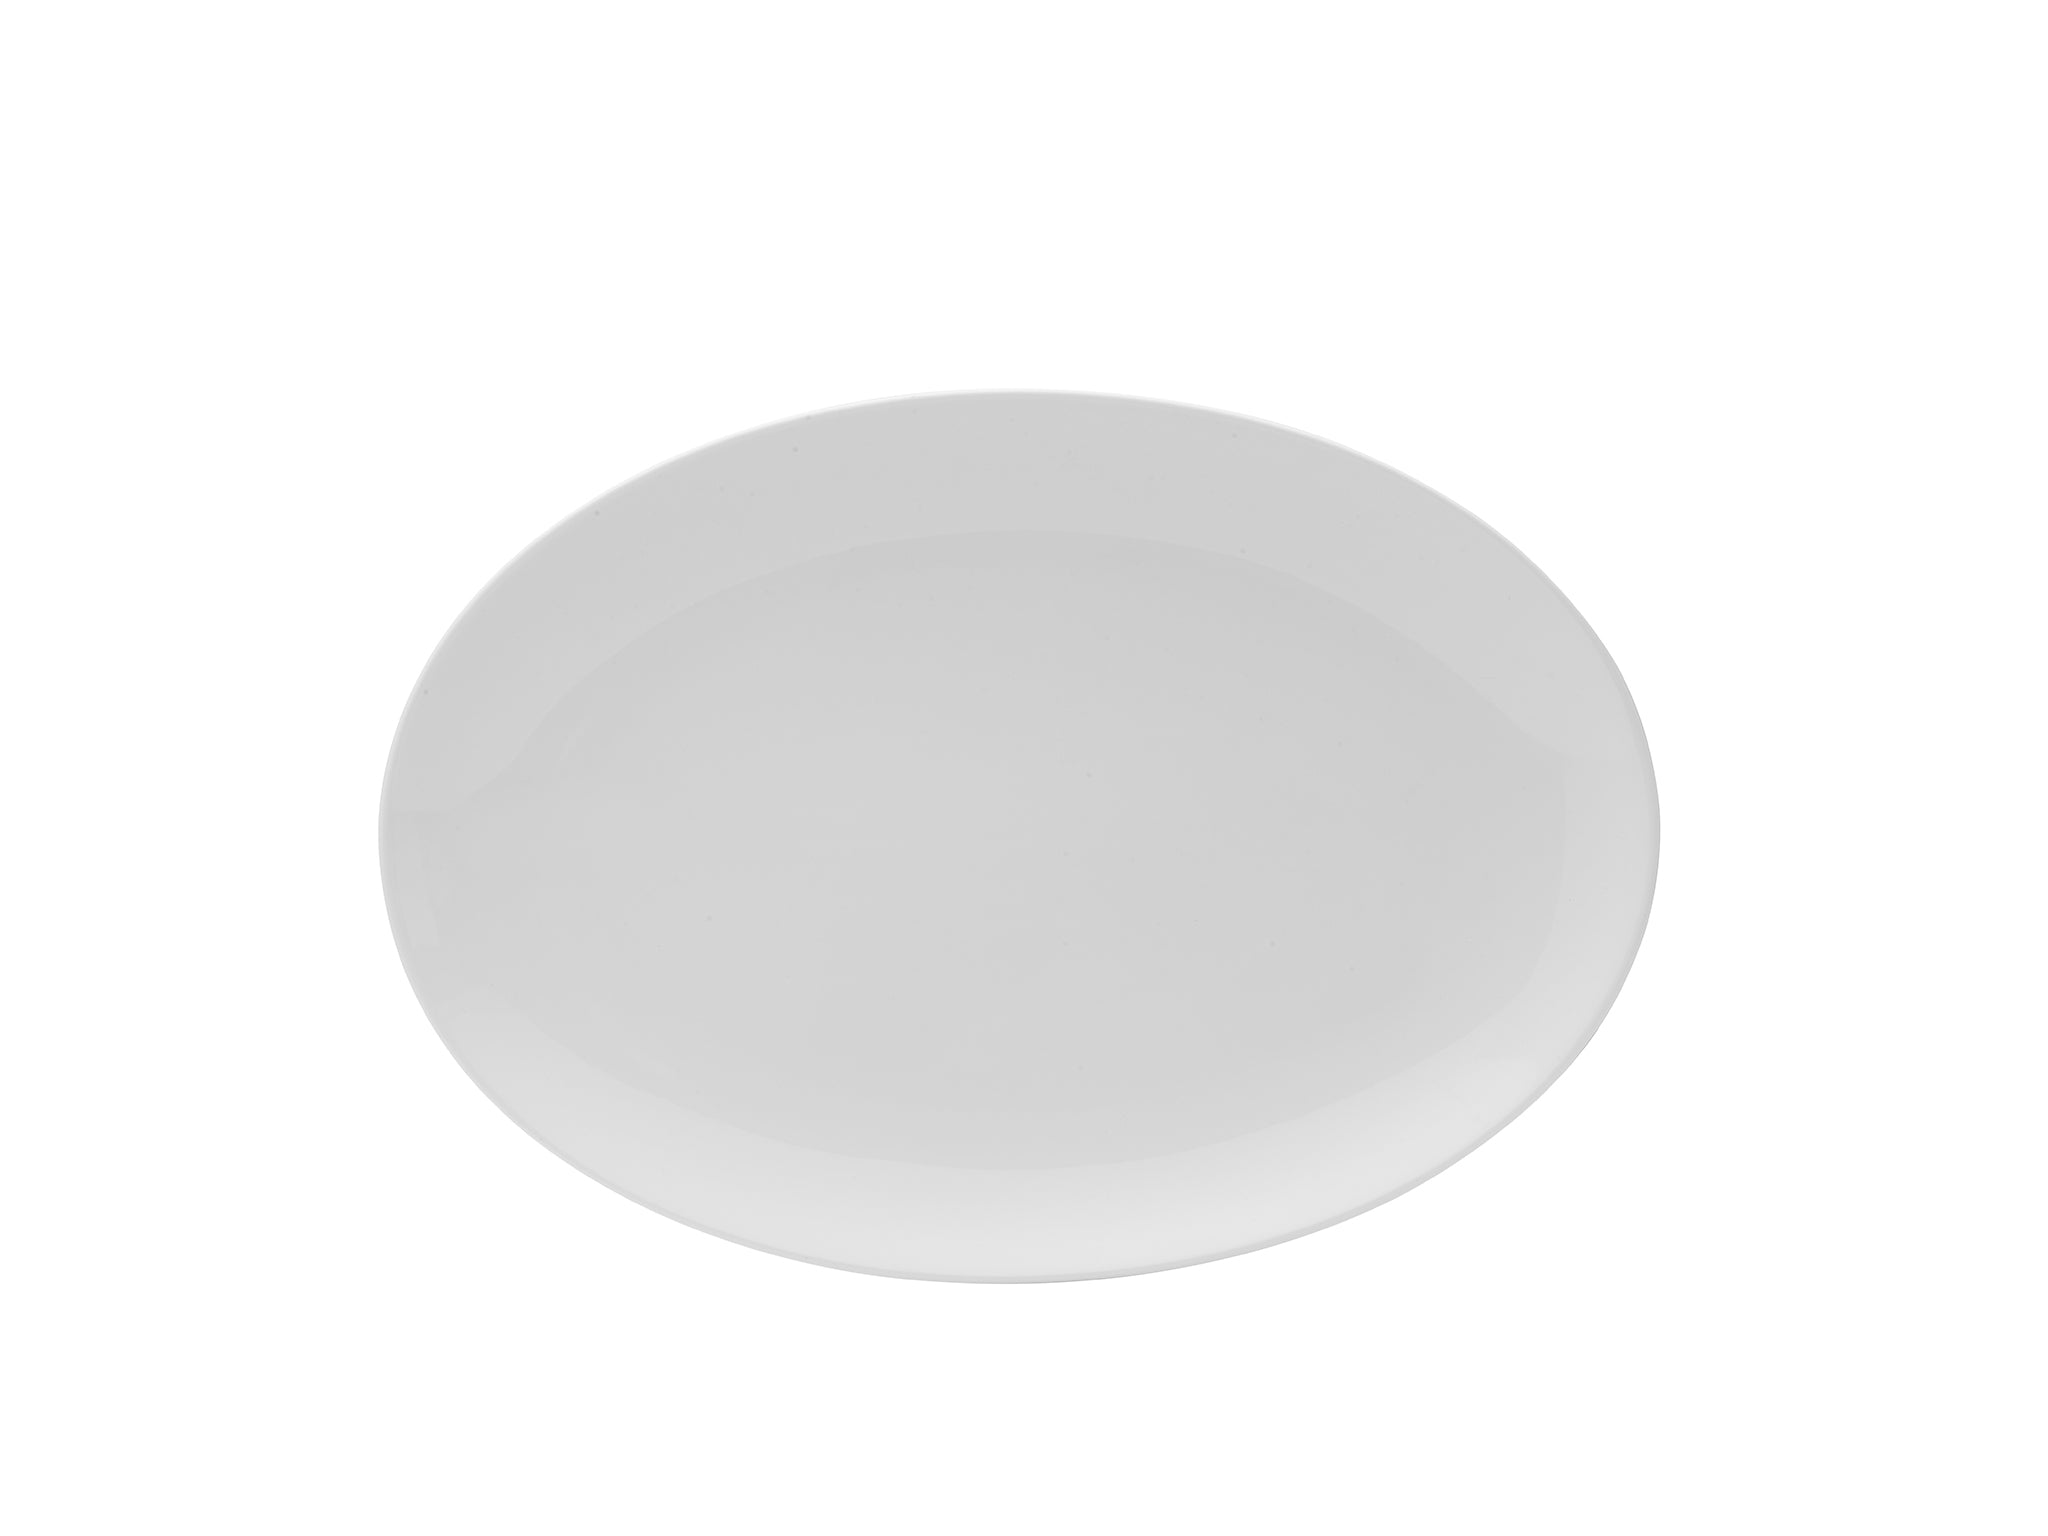 Galleria Porcelain Oval Platter 12x8" Bright White